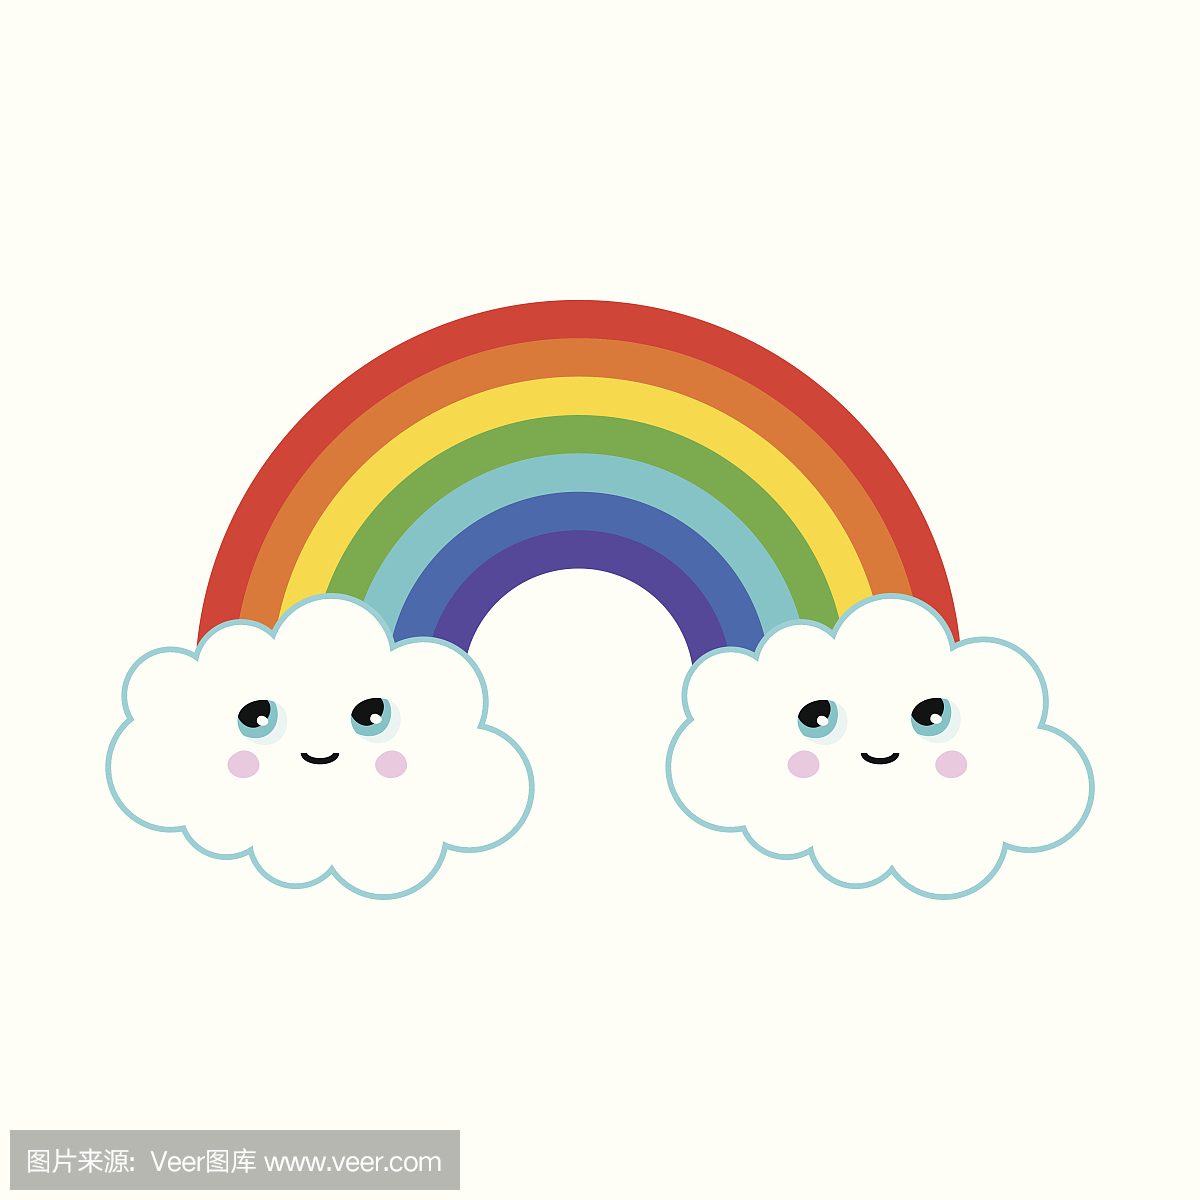 有趣的云彩彩虹插图